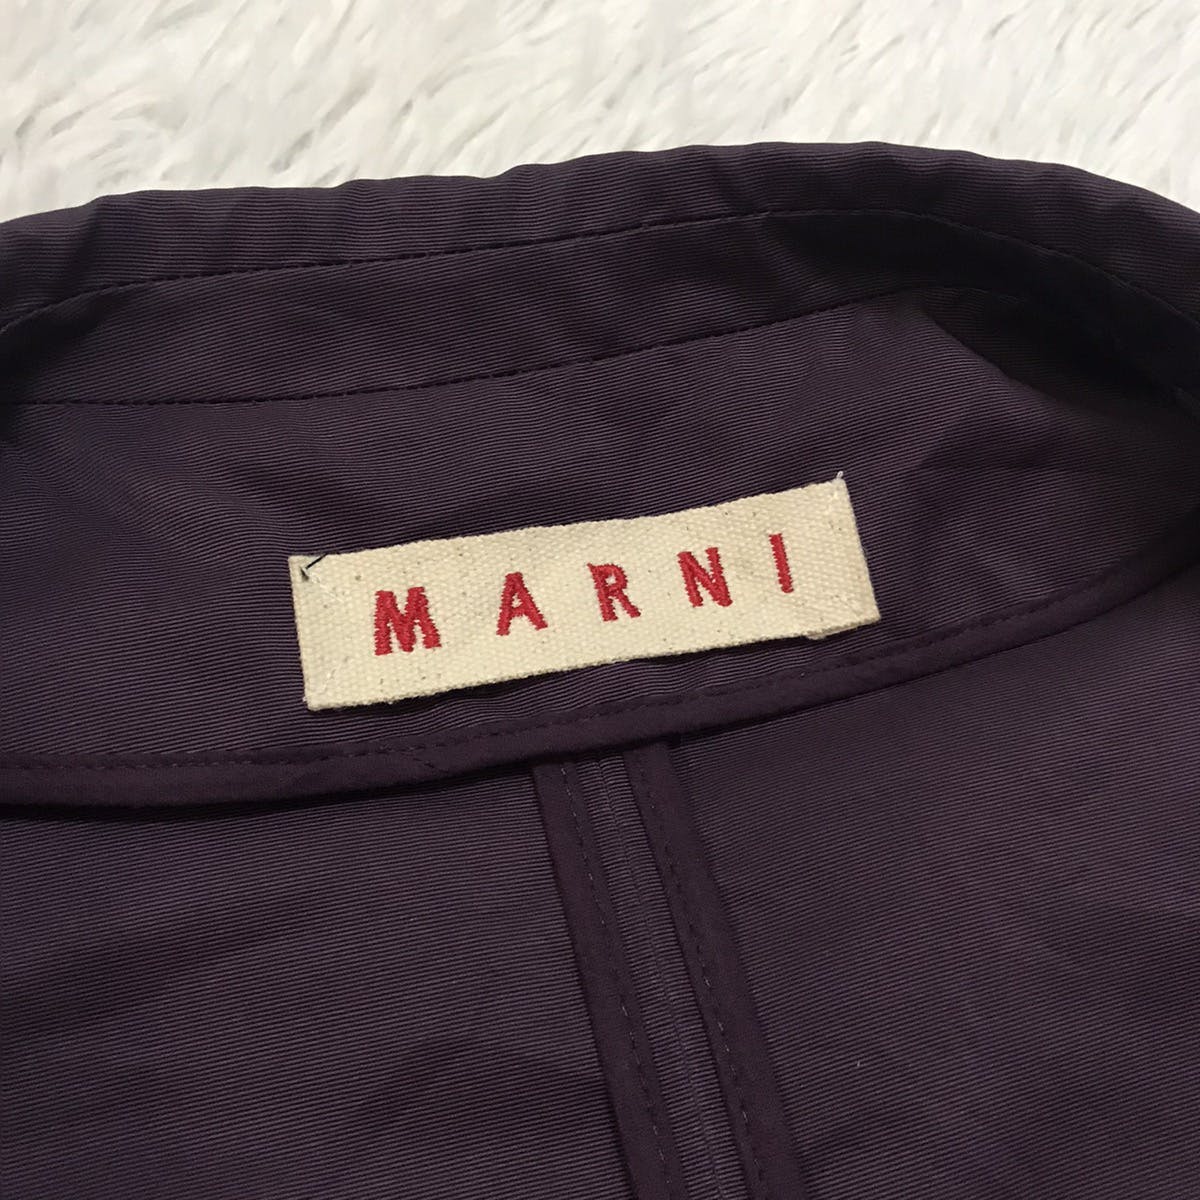 Marni Women Sleeveless Jacket Style Made in Italy - 11